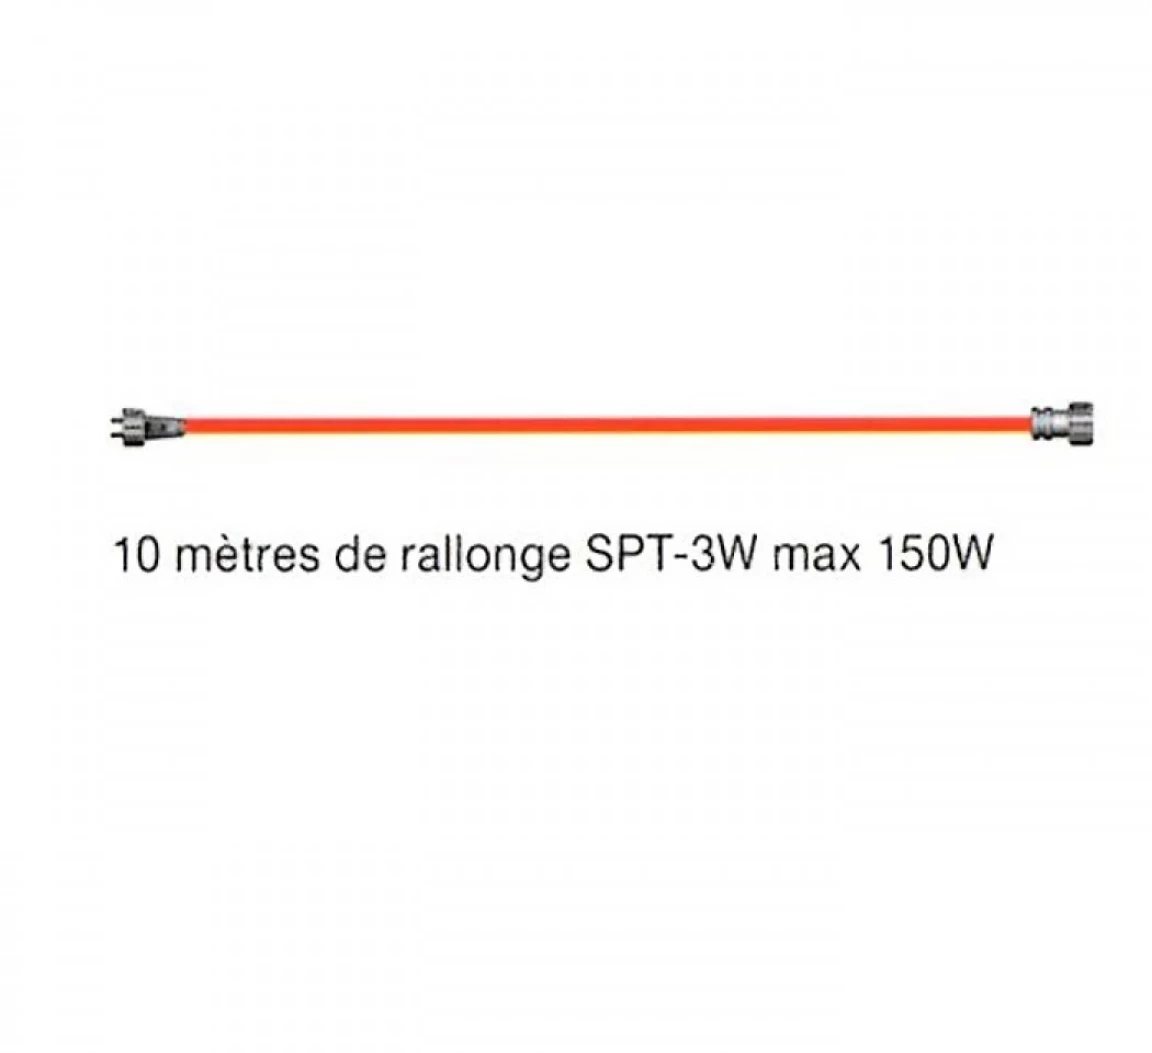 Rallonge 10 mètres SPT3, 150w max